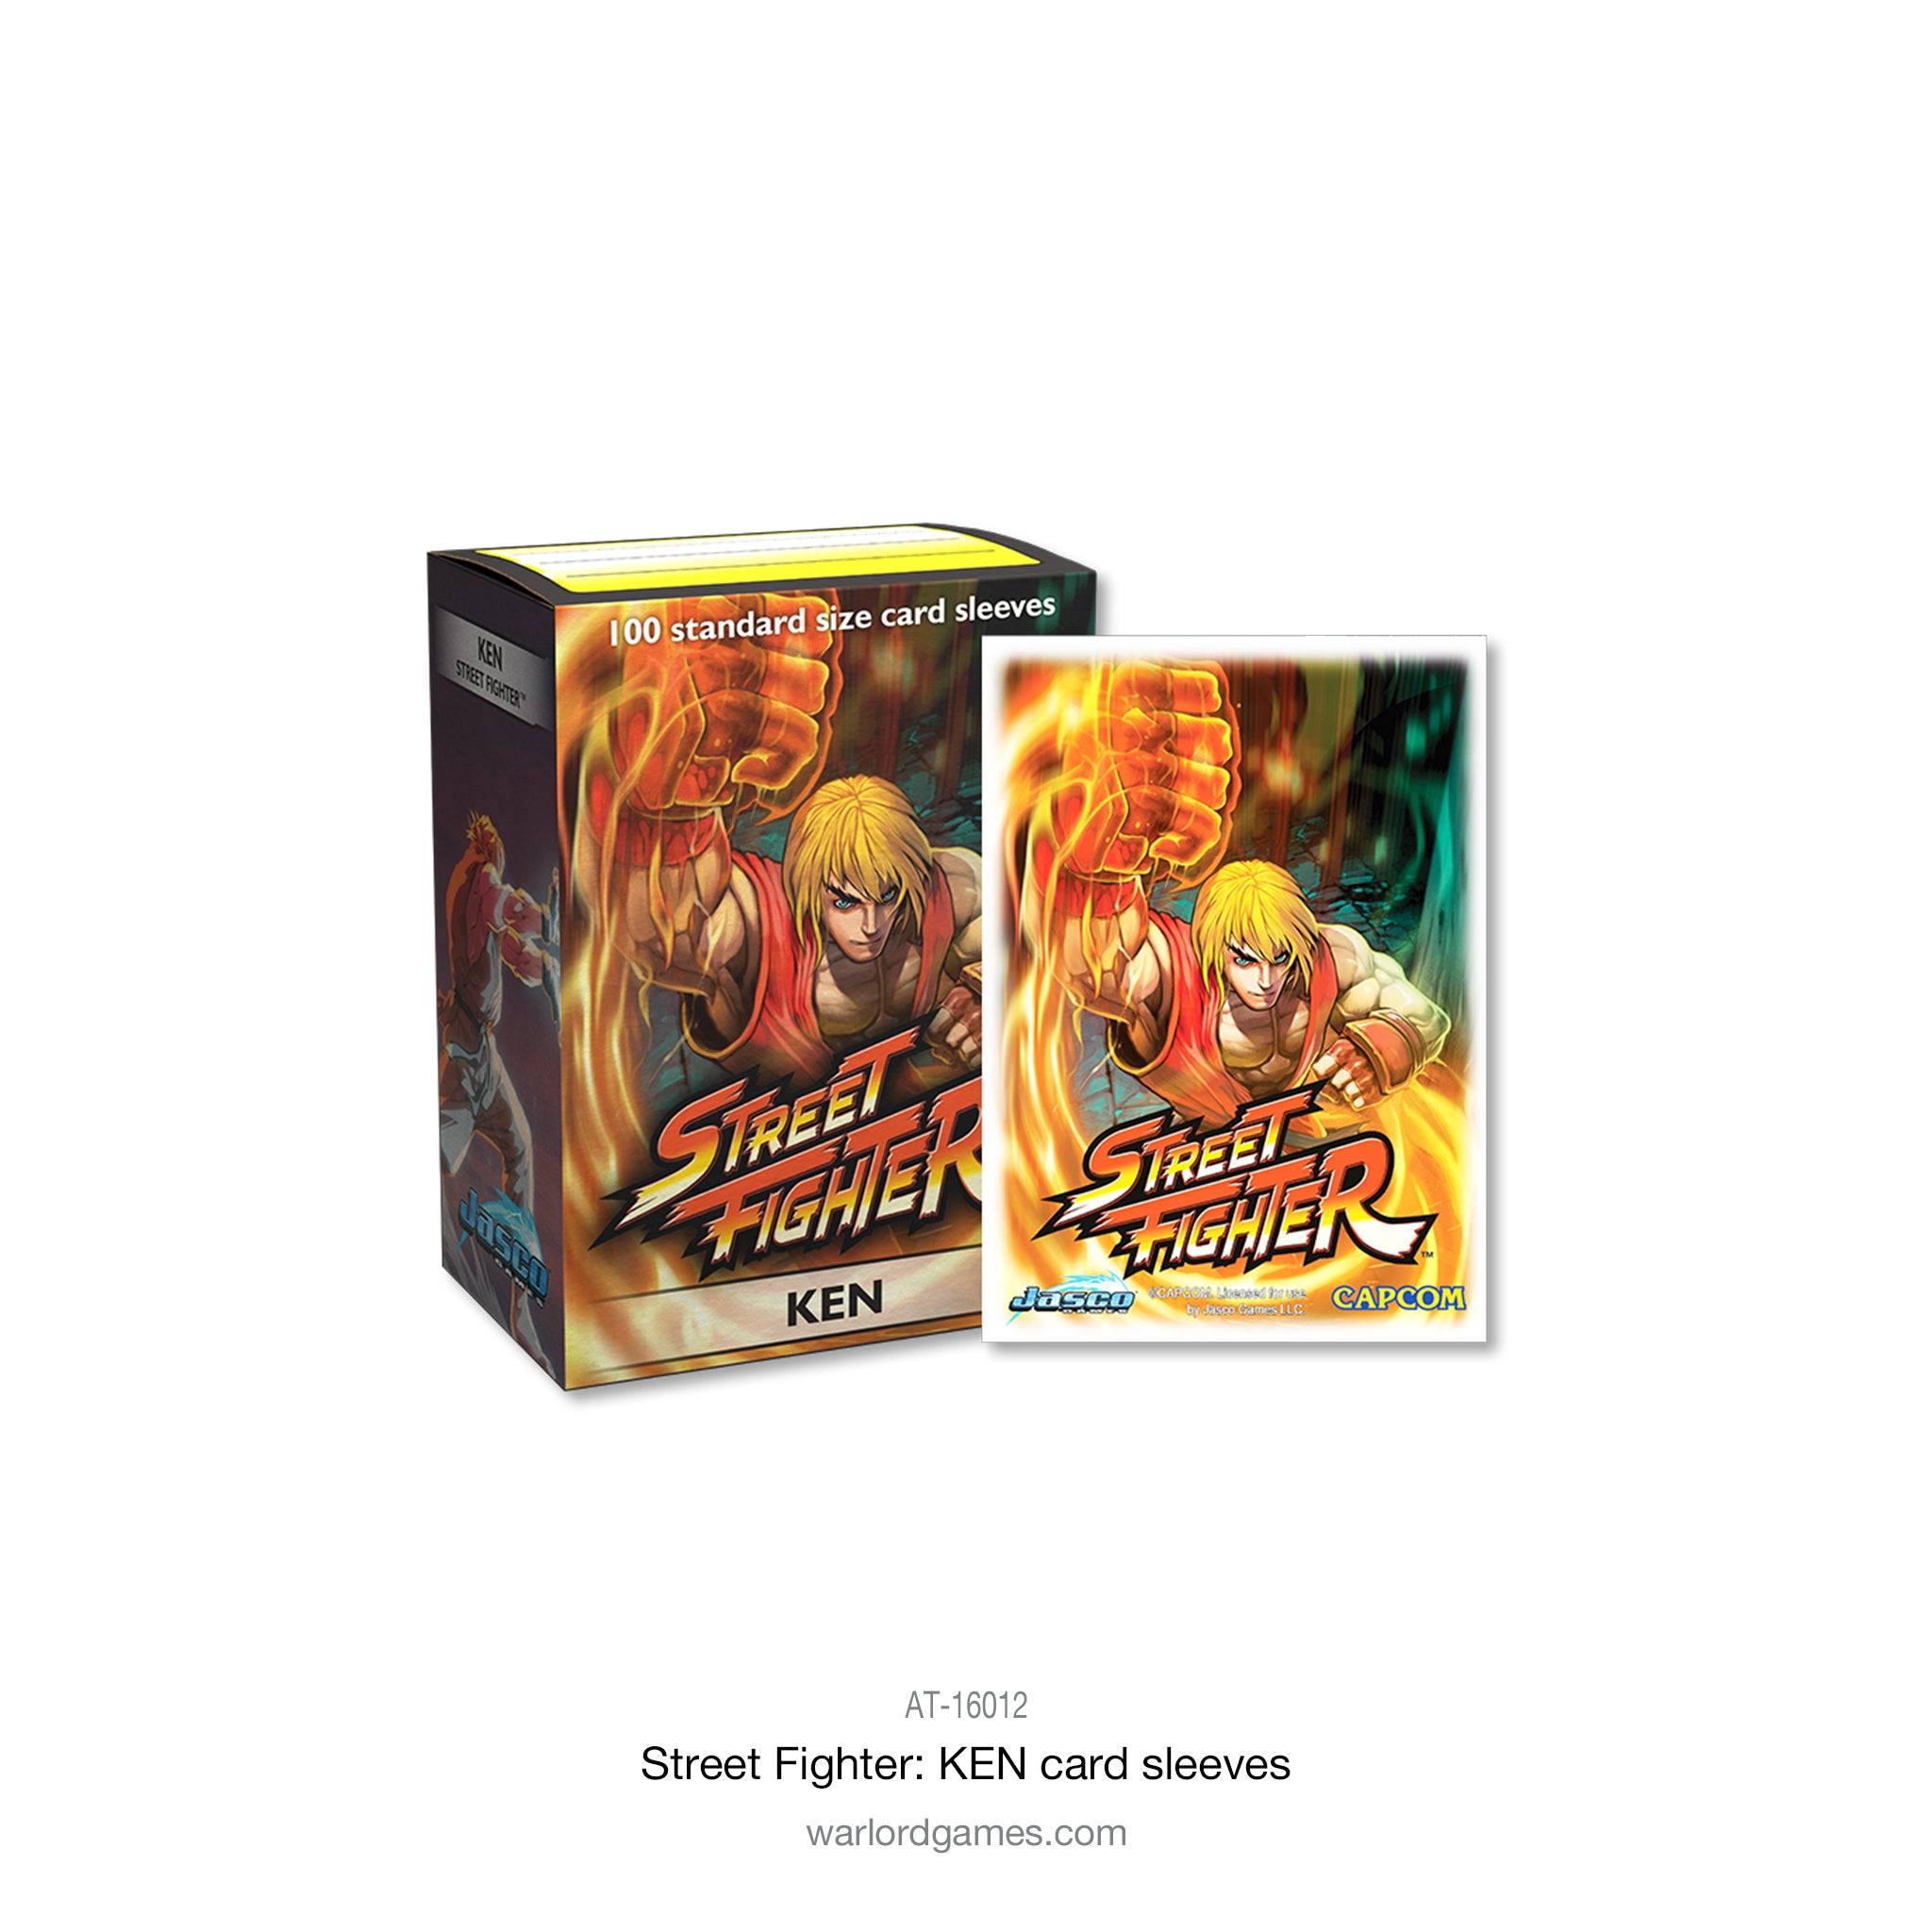 Street Fighter: Ken card sleeves